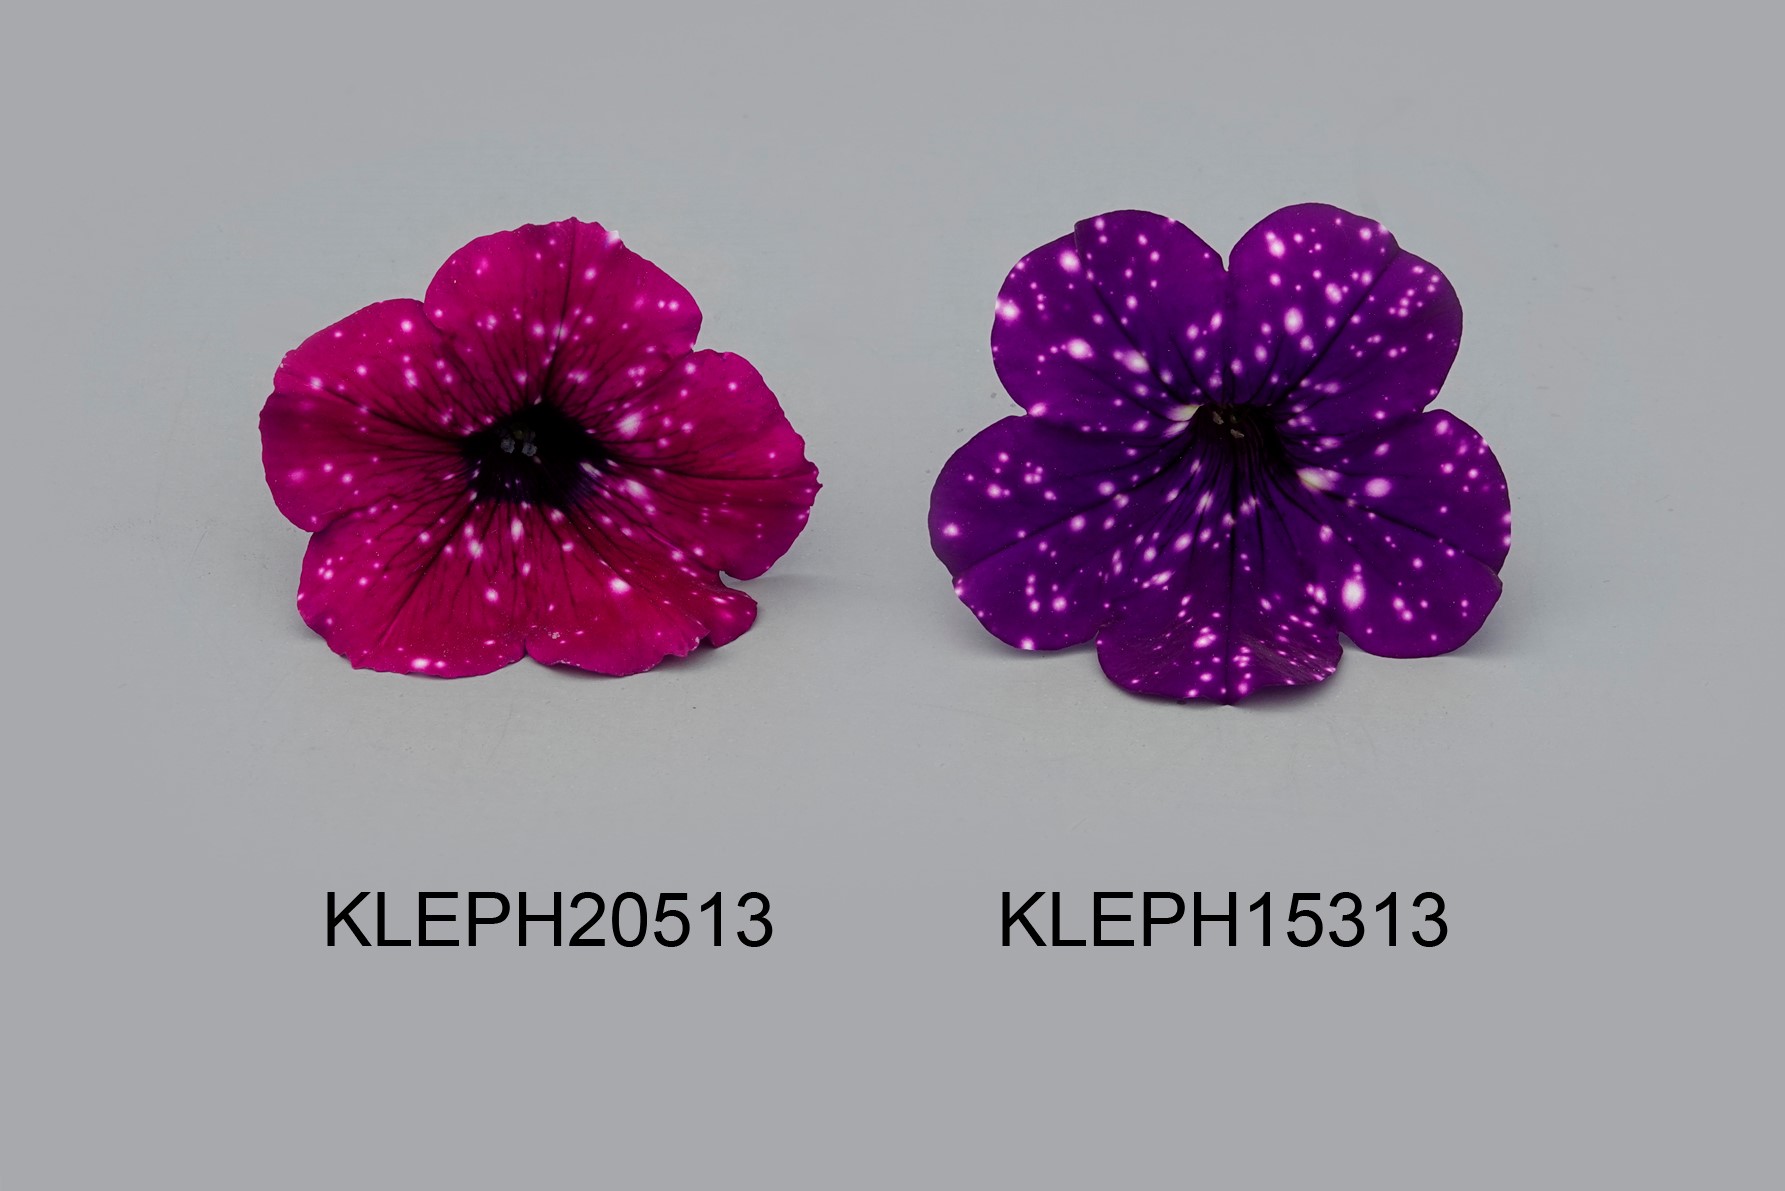 KLEPH20513